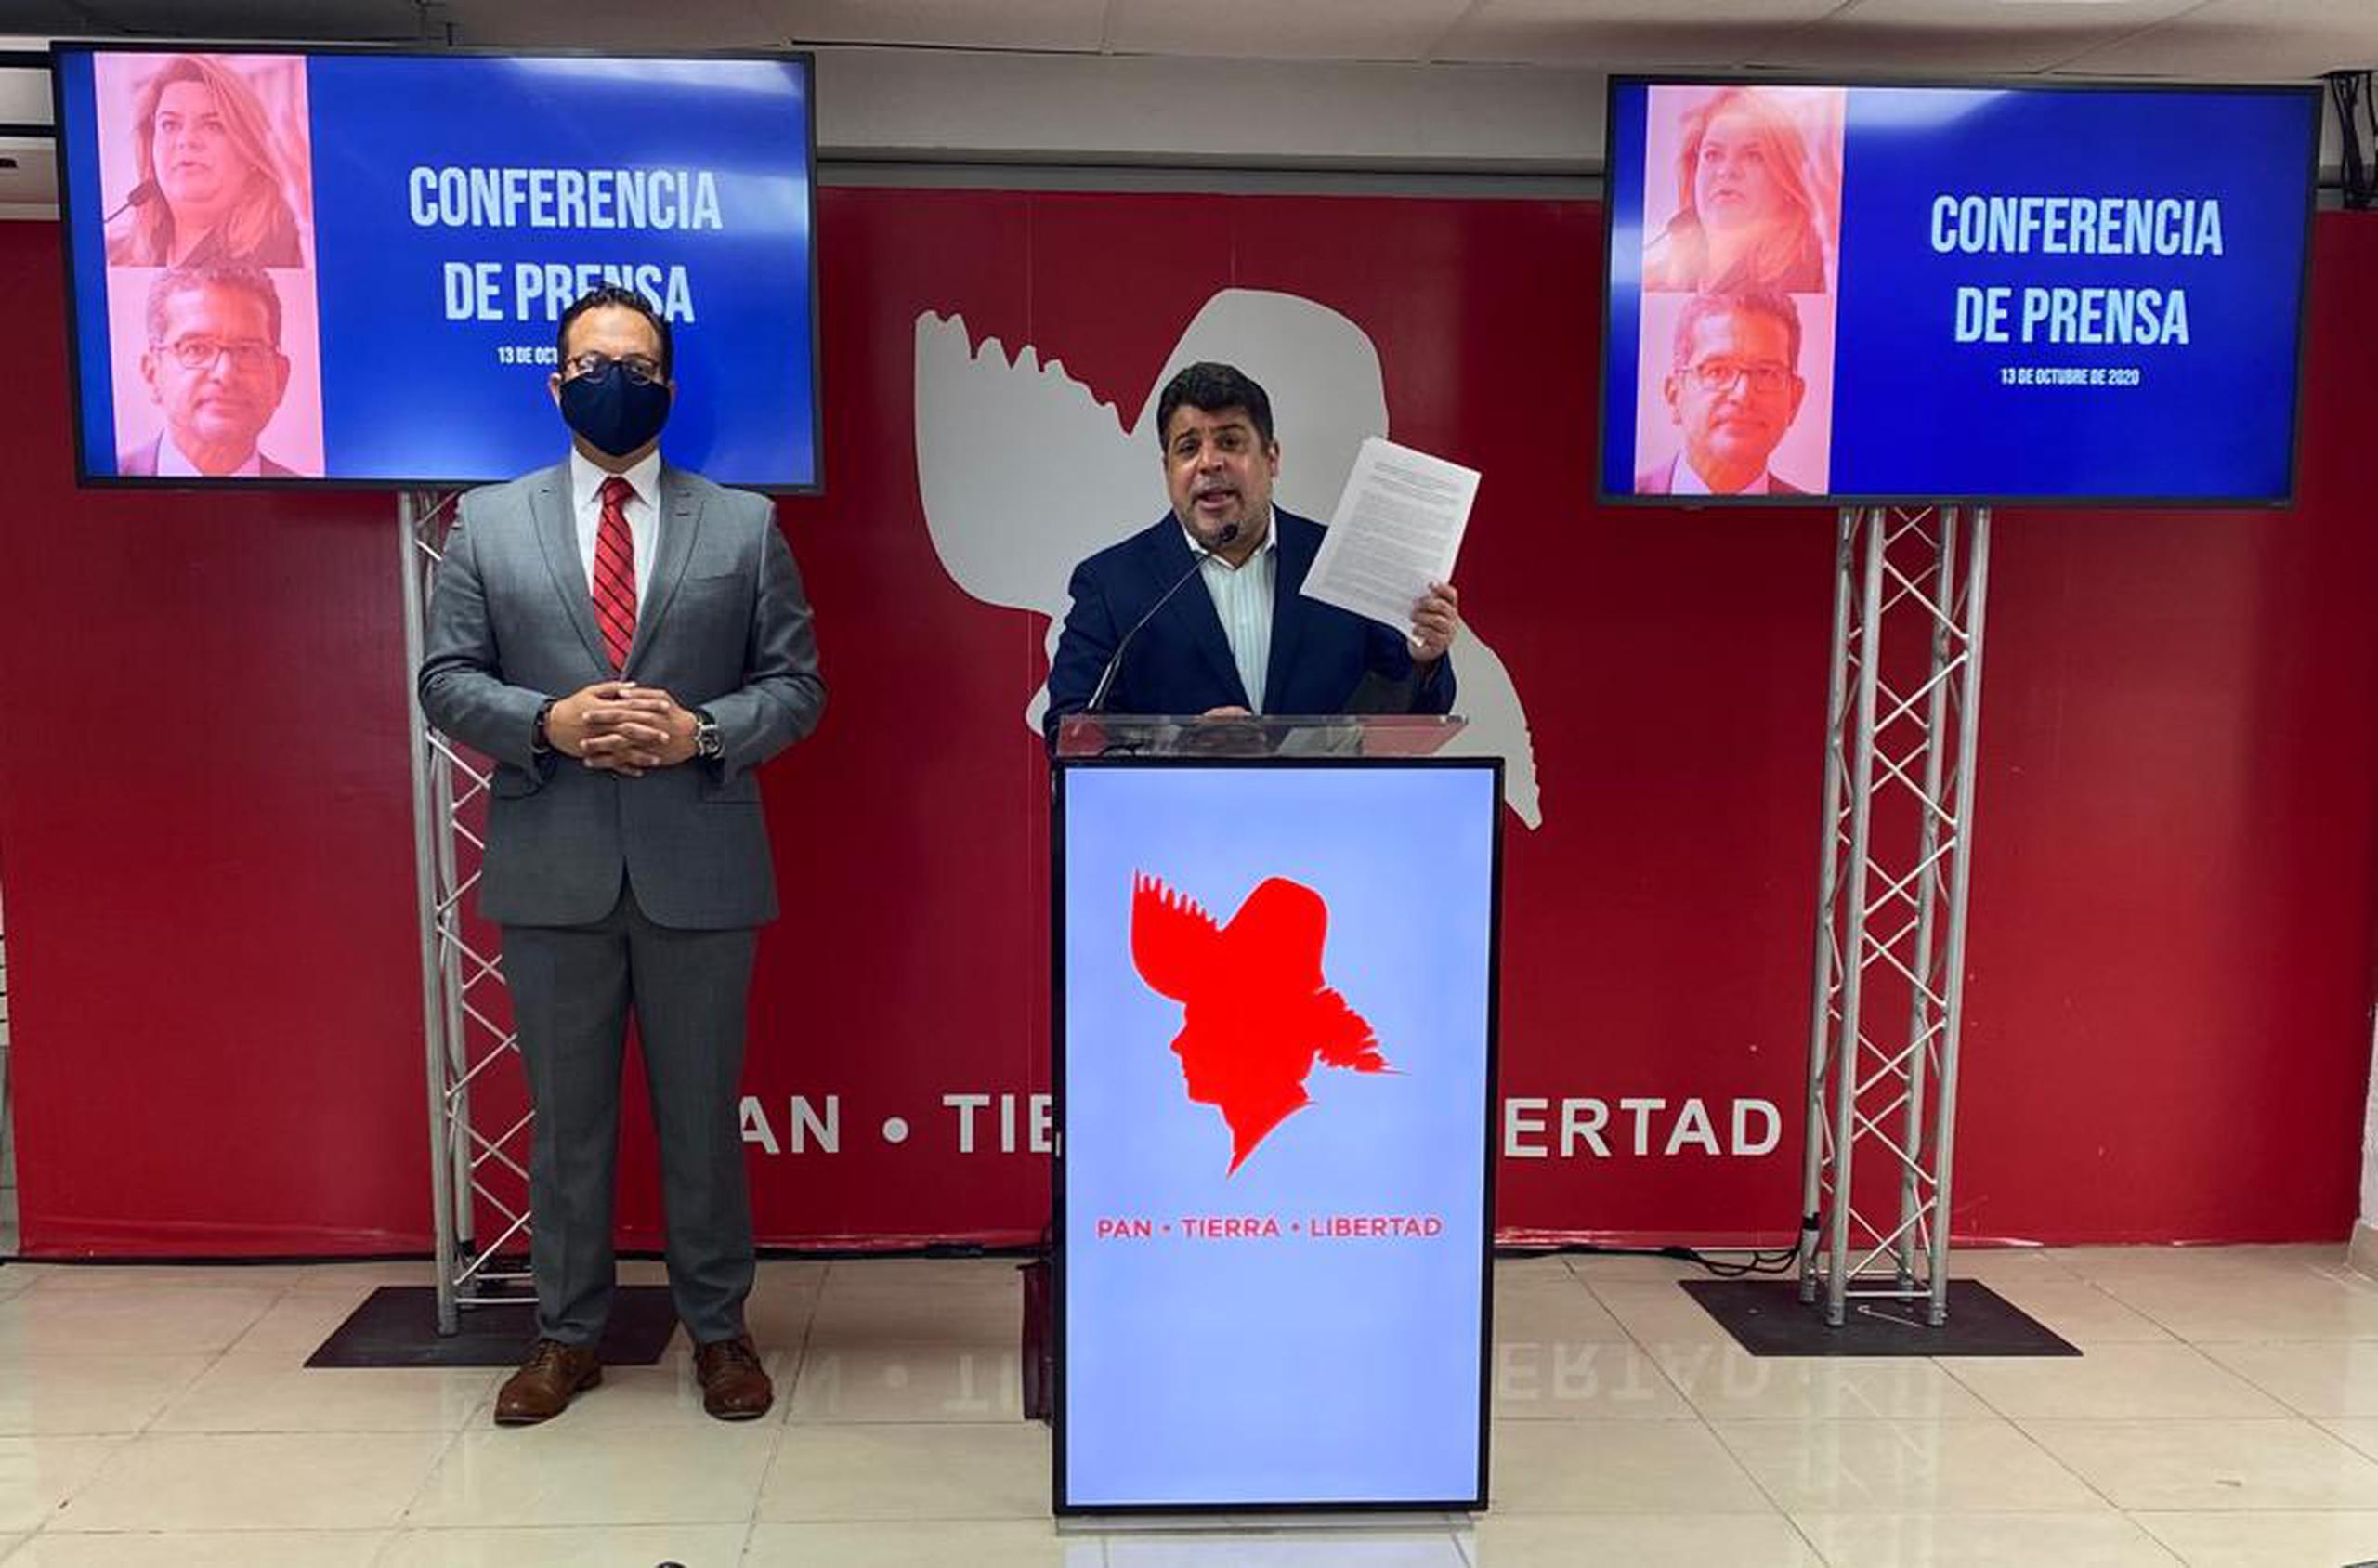 El candidato a representante por acumulación Gabriel López Arrieta y el representante Luis Vega Ramos hicieron las denuncias en la sede del PPD.